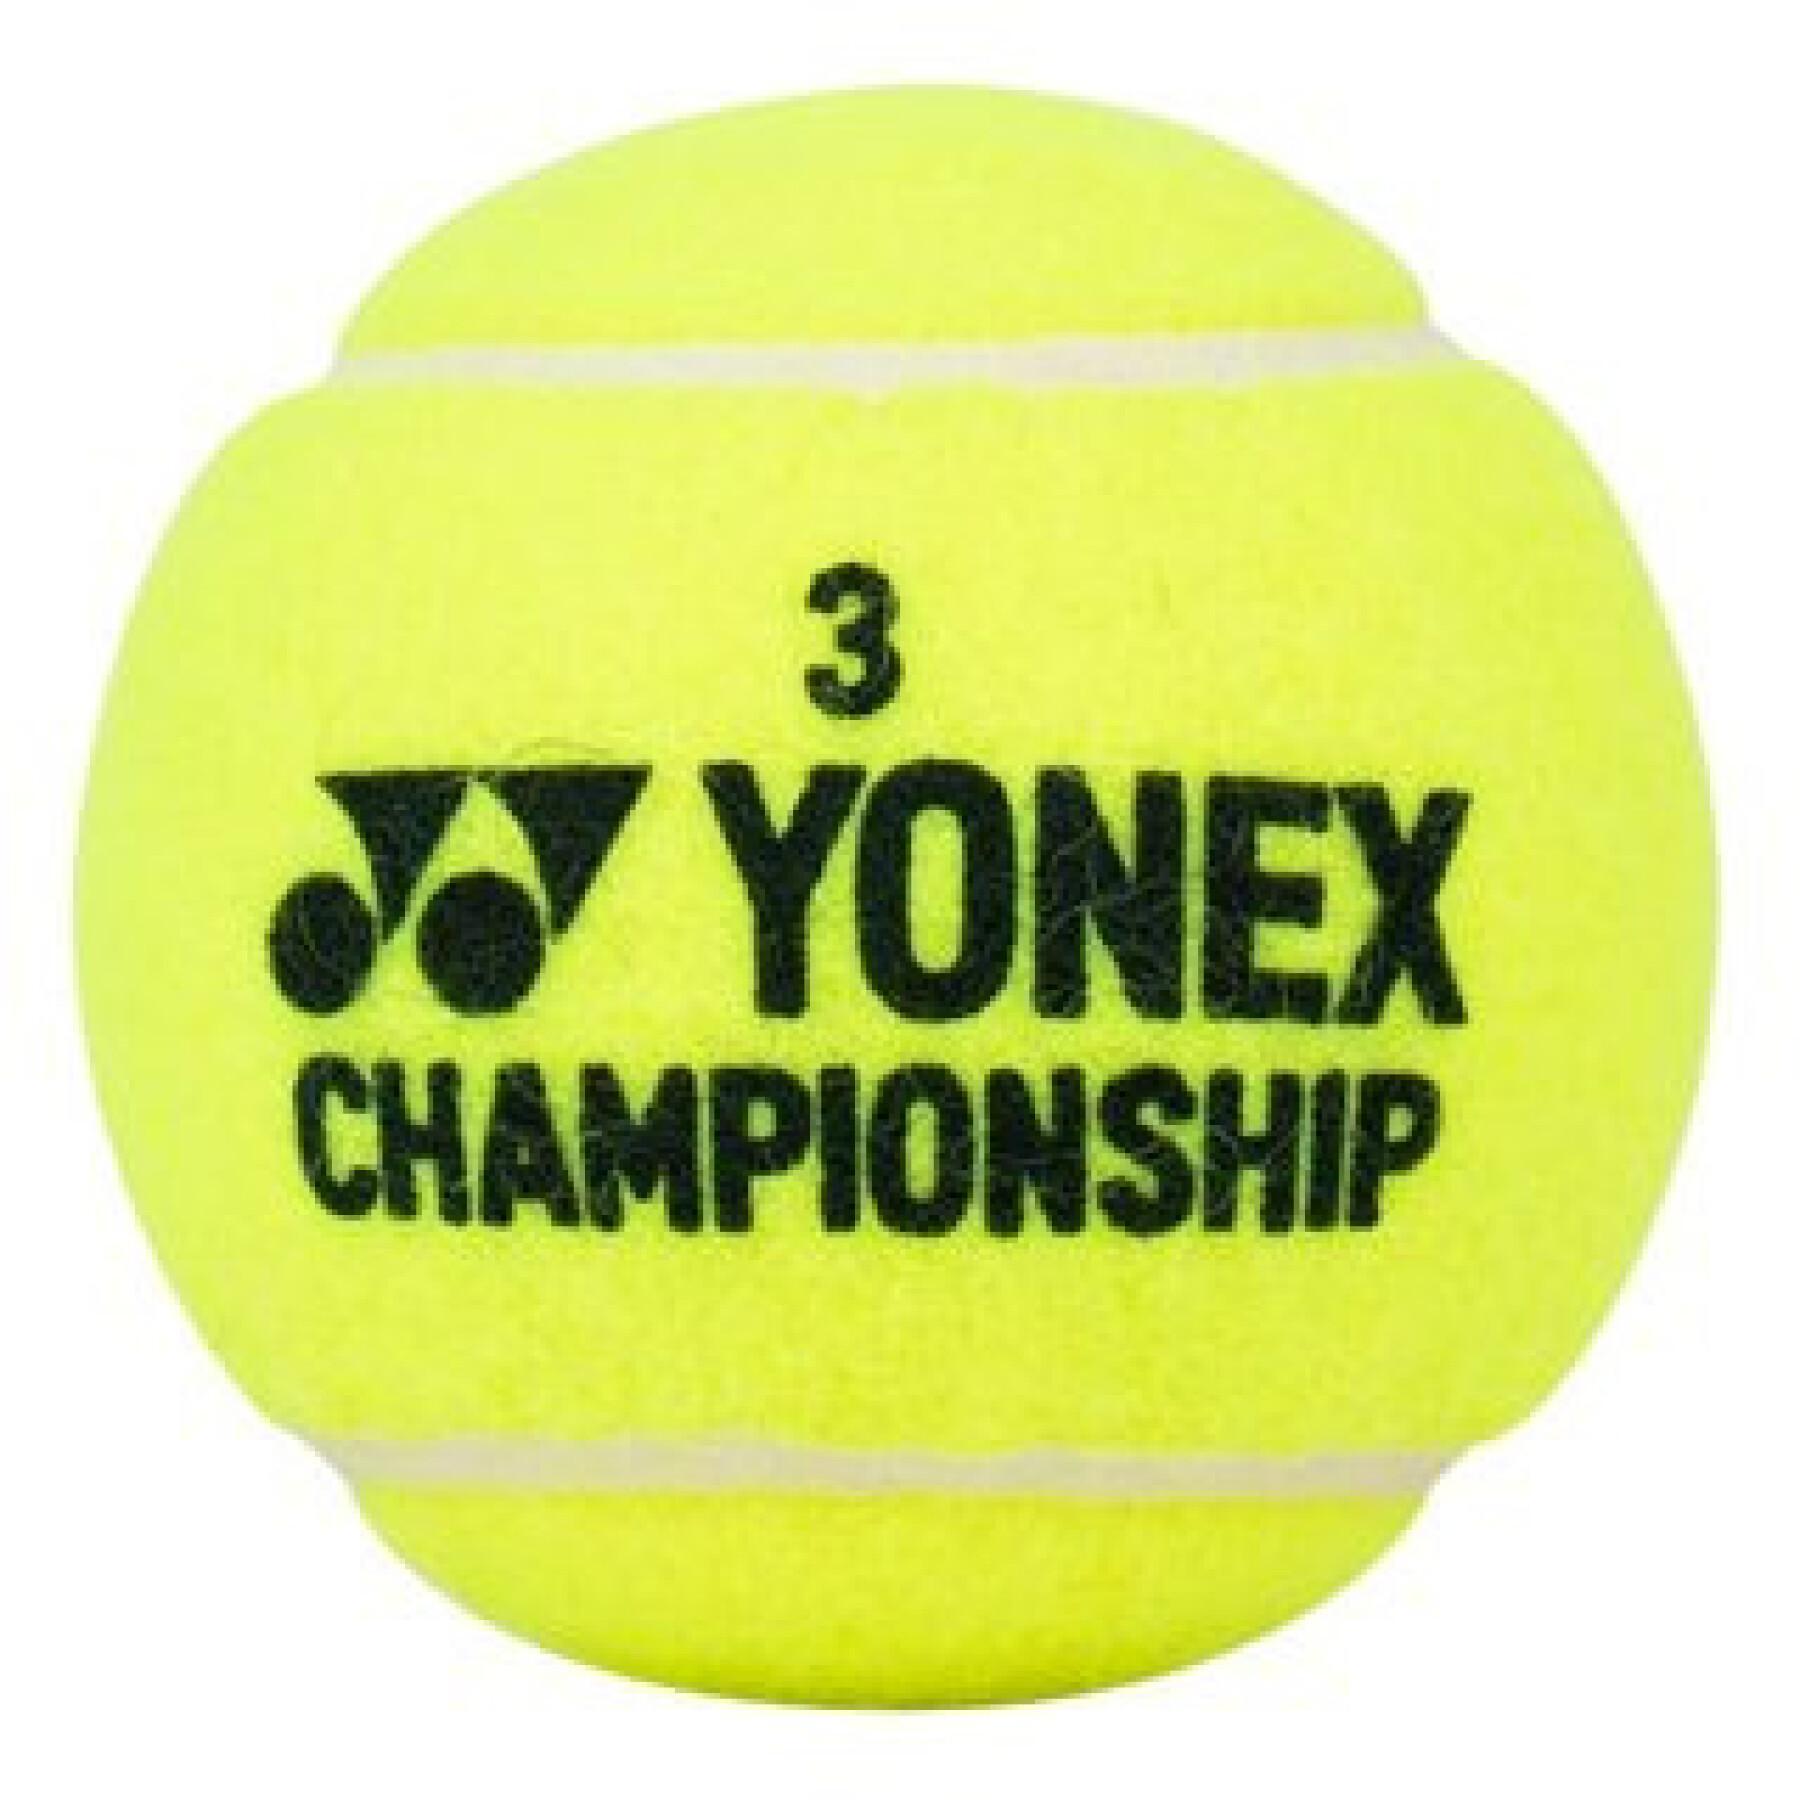 Lot de 4 balles de tennis Yonex Championship